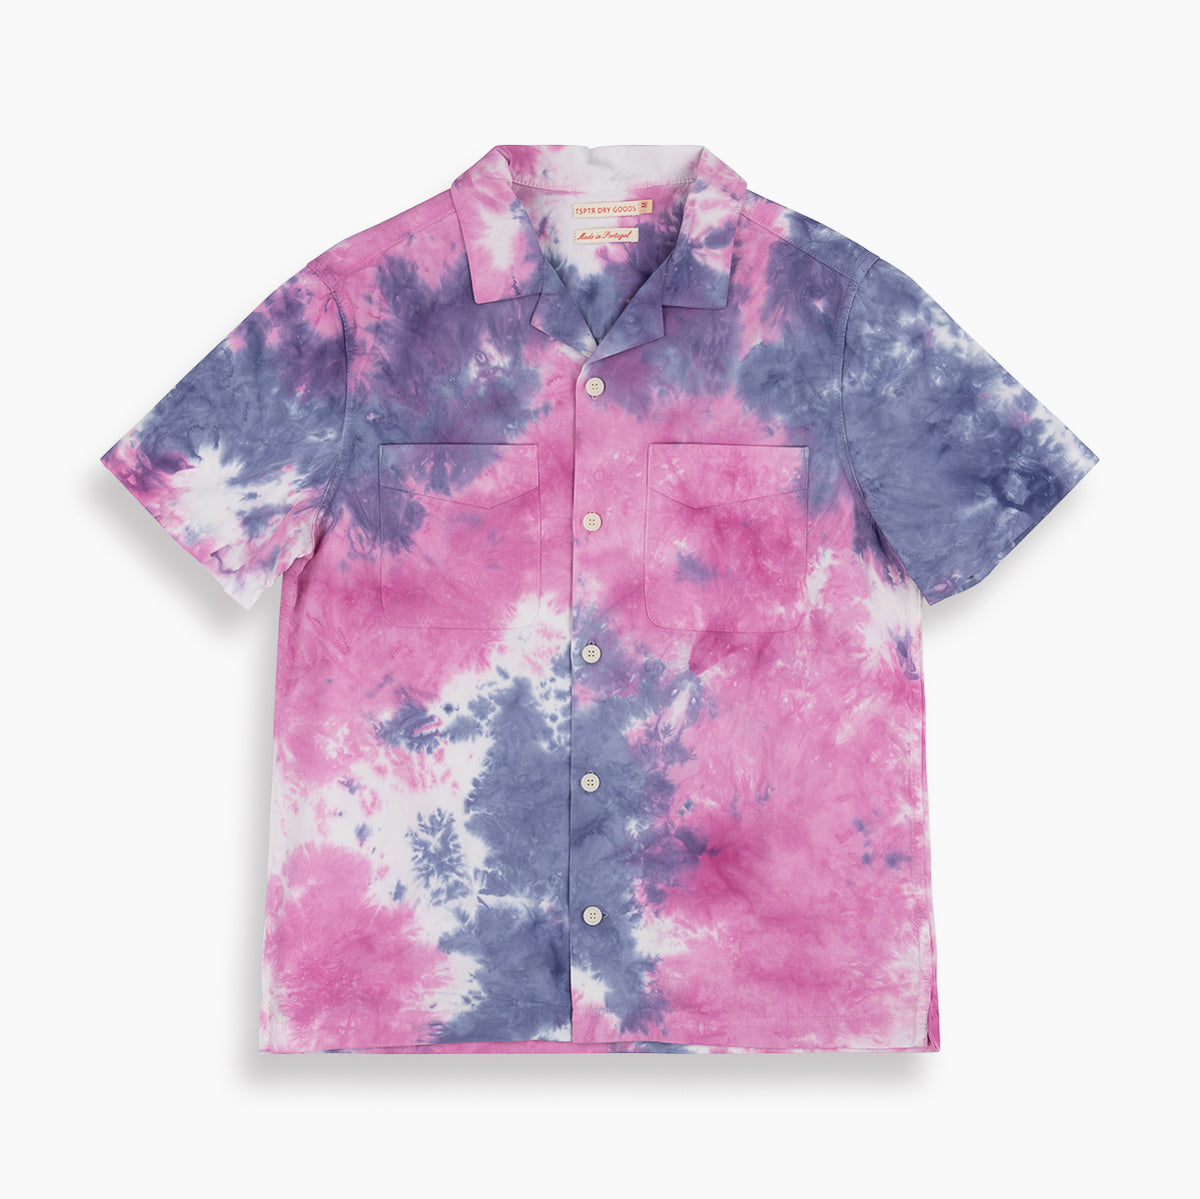 Maui Shirt